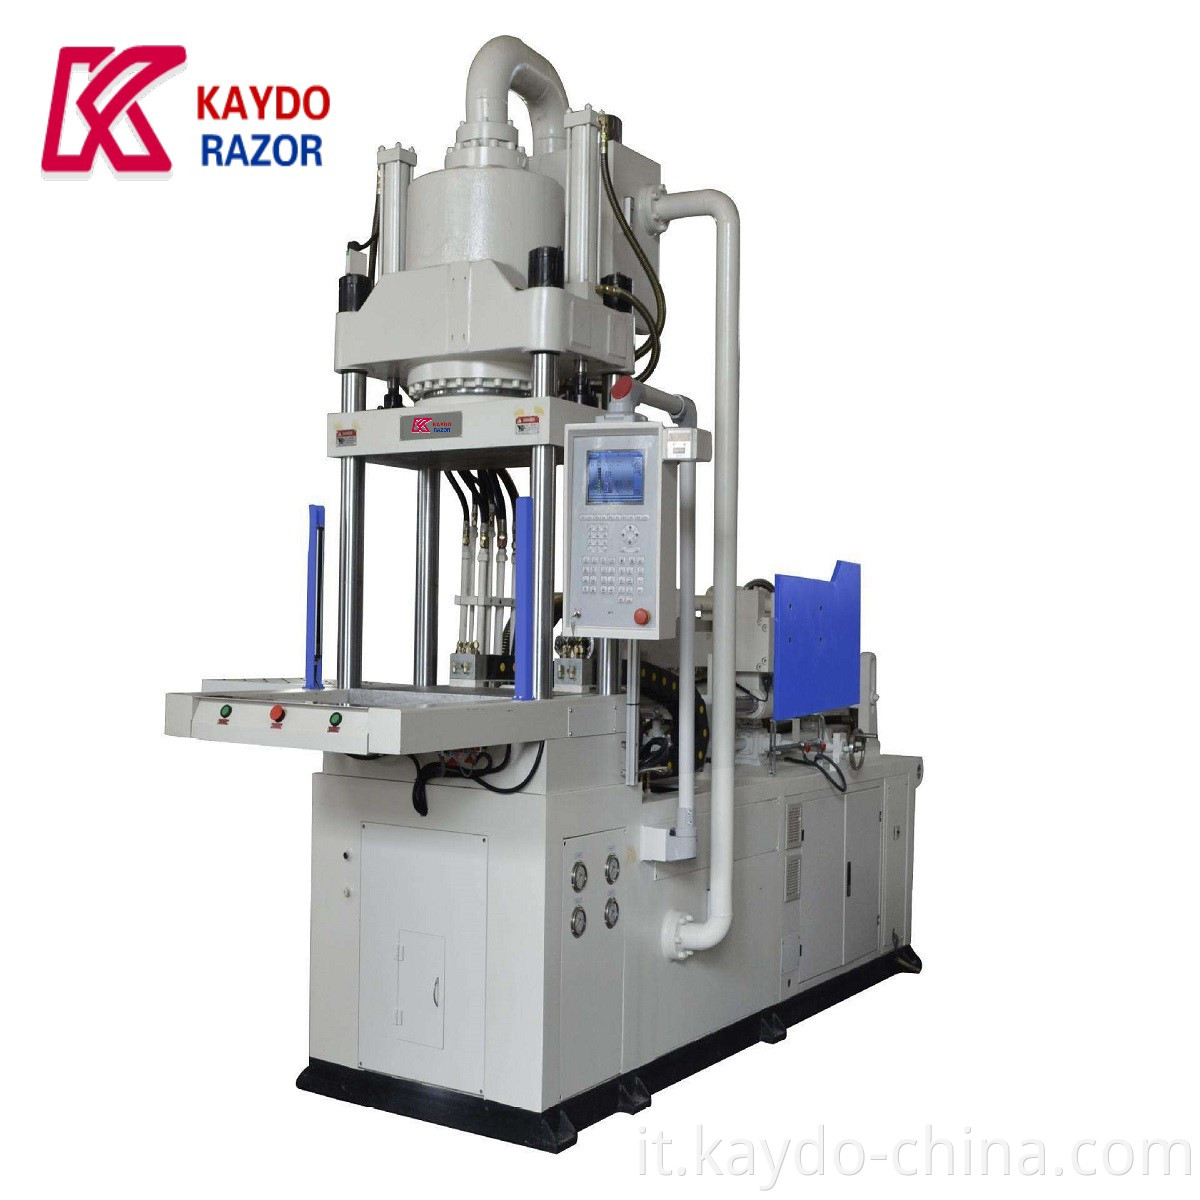 Kaydo 2018 Machine di stampaggio a iniezione di rasoio a basso prezzo a basso prezzo